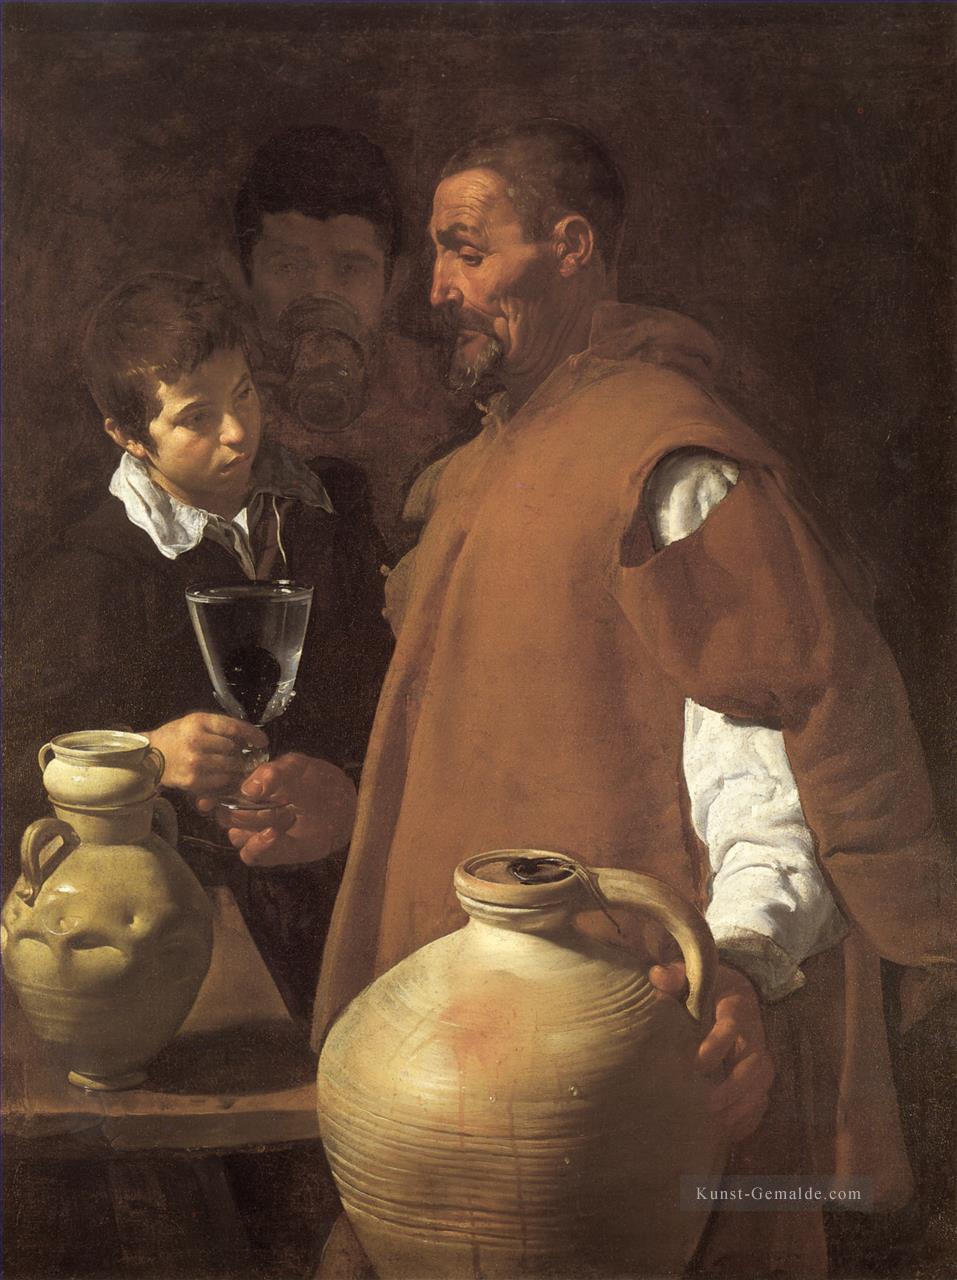 der Wasserverkäufer von Sevilla Diego Velázquez Ölgemälde